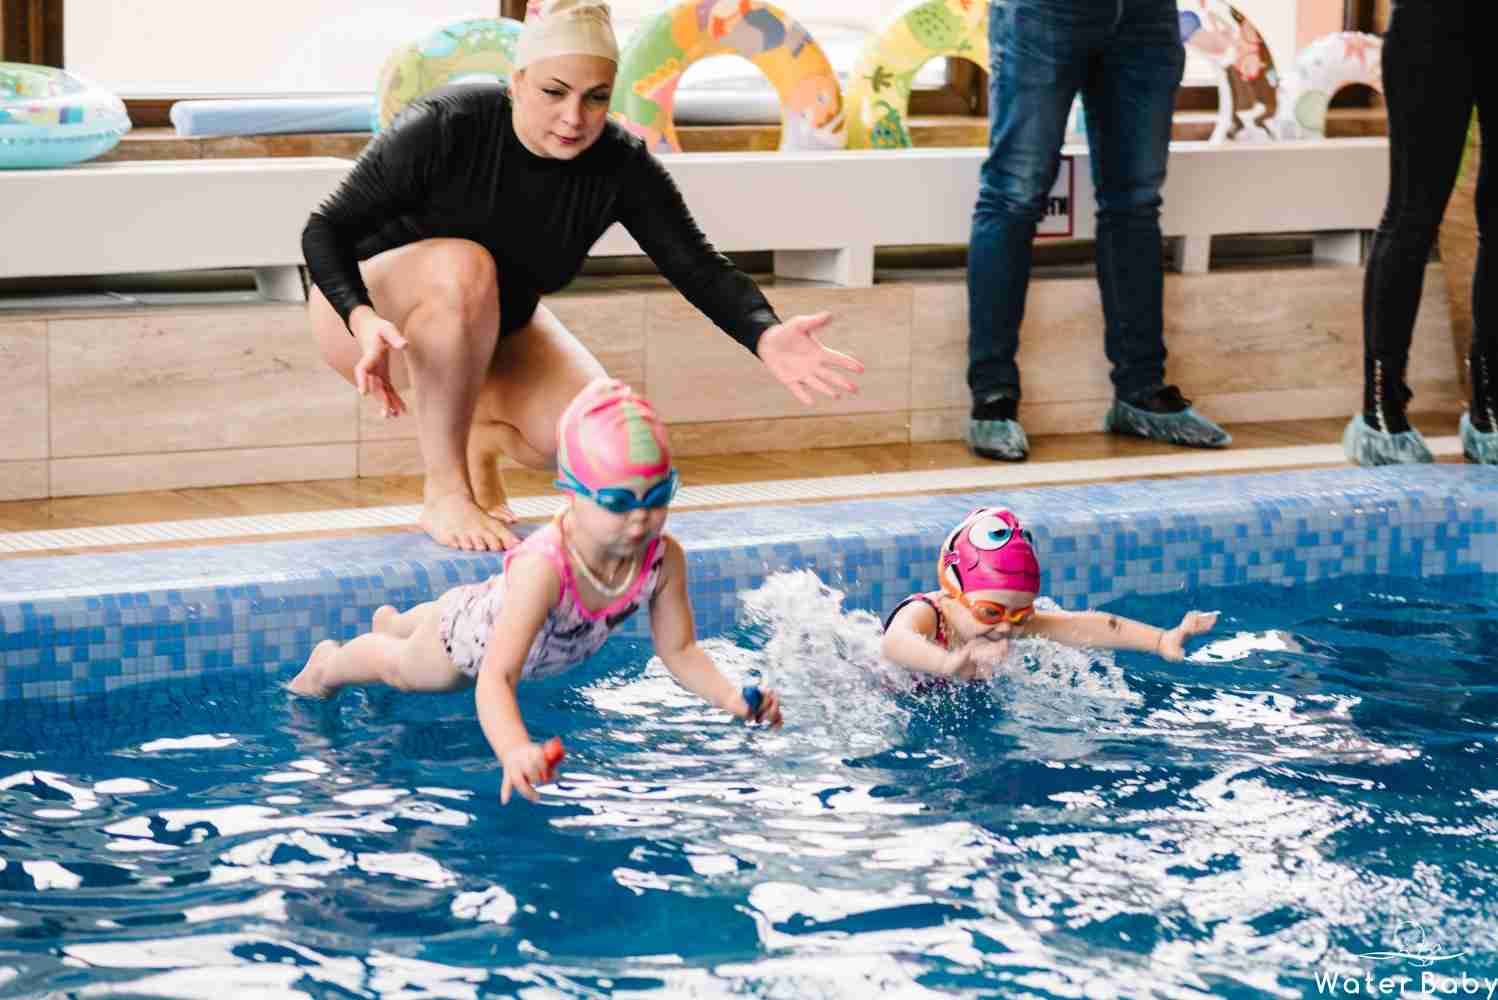 Занятие обучение плаванию. Занятия в бассейне для детей. Дети в бассейне. Занятия плаванием для детей. Занятие плаванием в бассейне для детей.